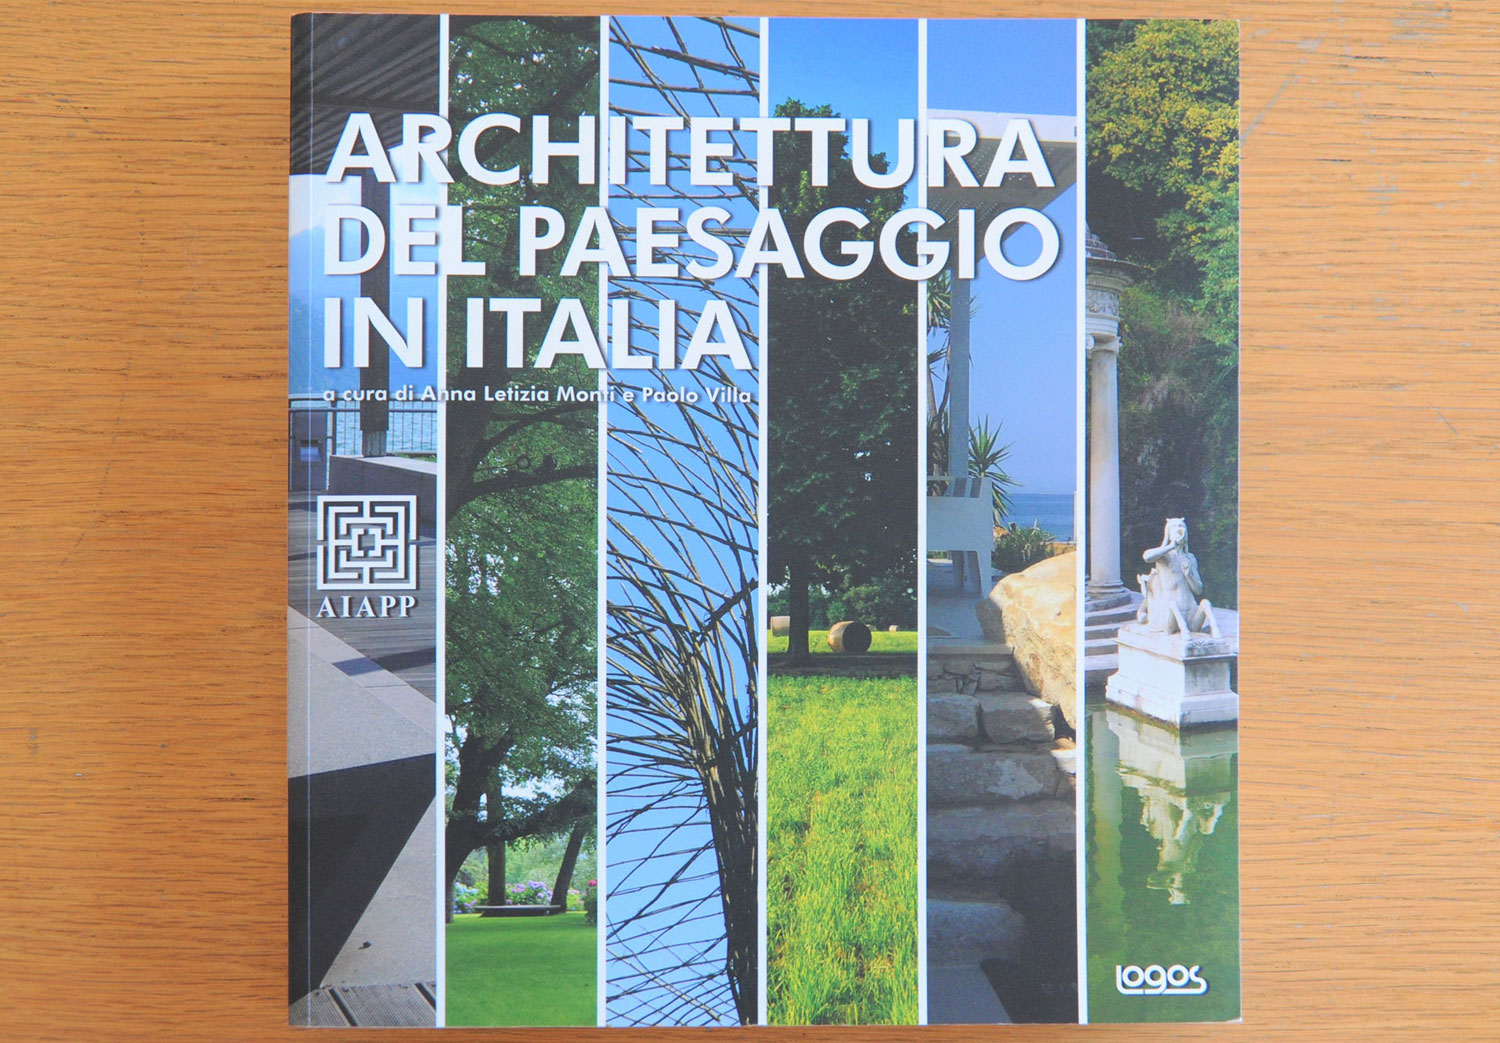 Architettura del Paesaggio in italia, Logos, 2011